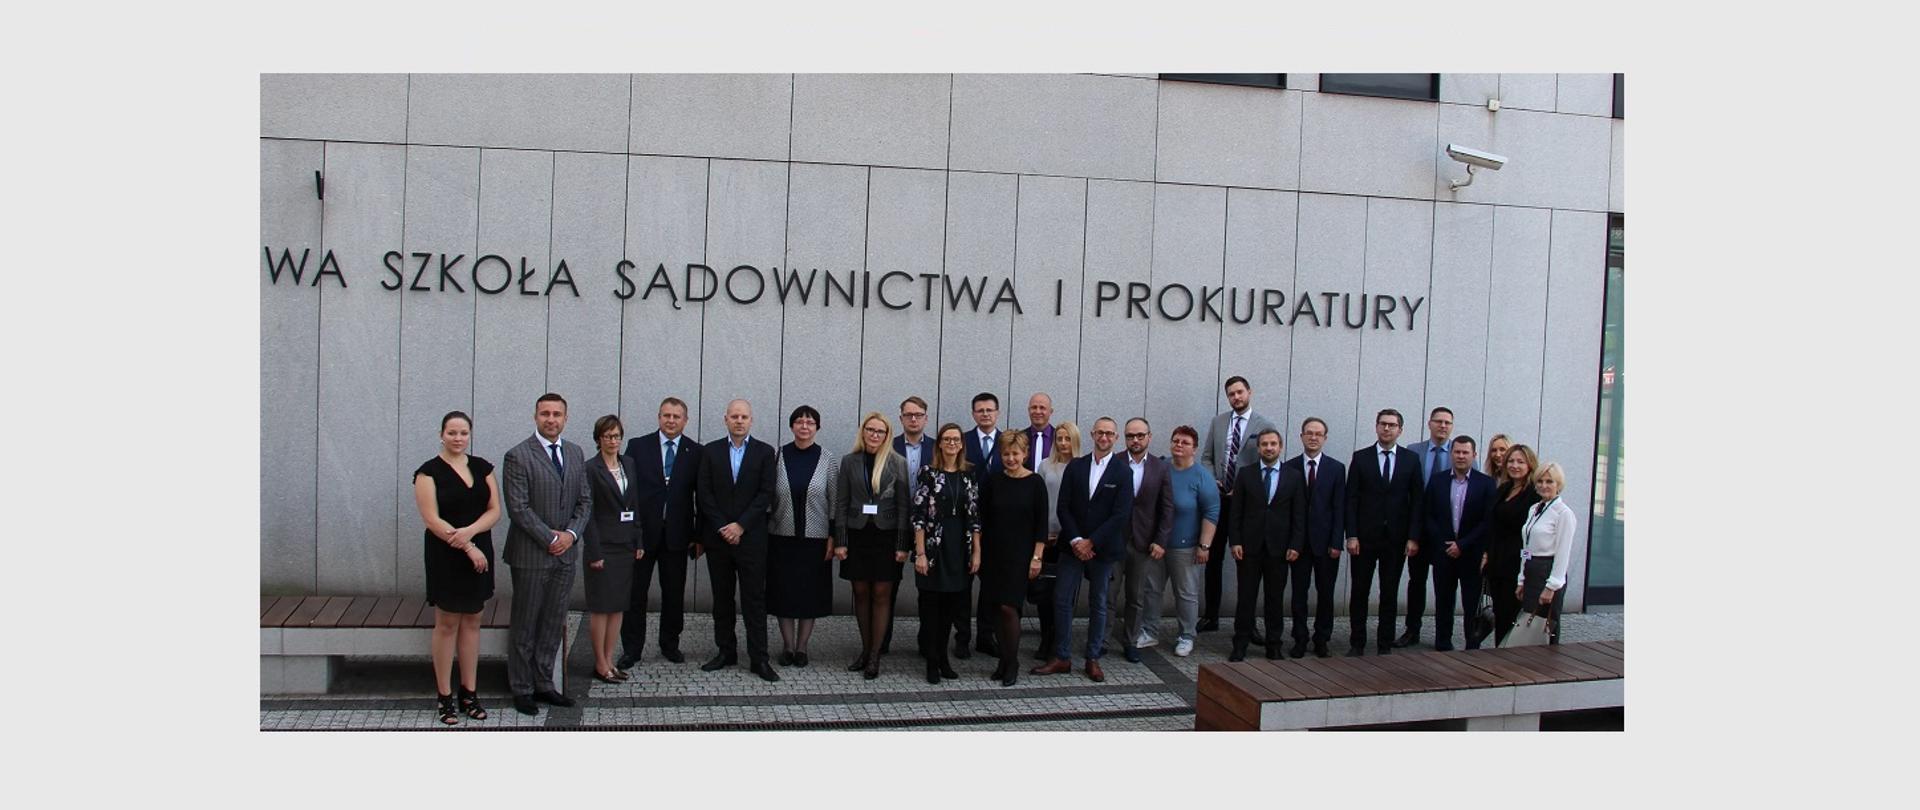 zdjęcie grupowe uczestników szkolenia na tle napisu Krajowa Szkoła Sądownictwa i Prokuratury